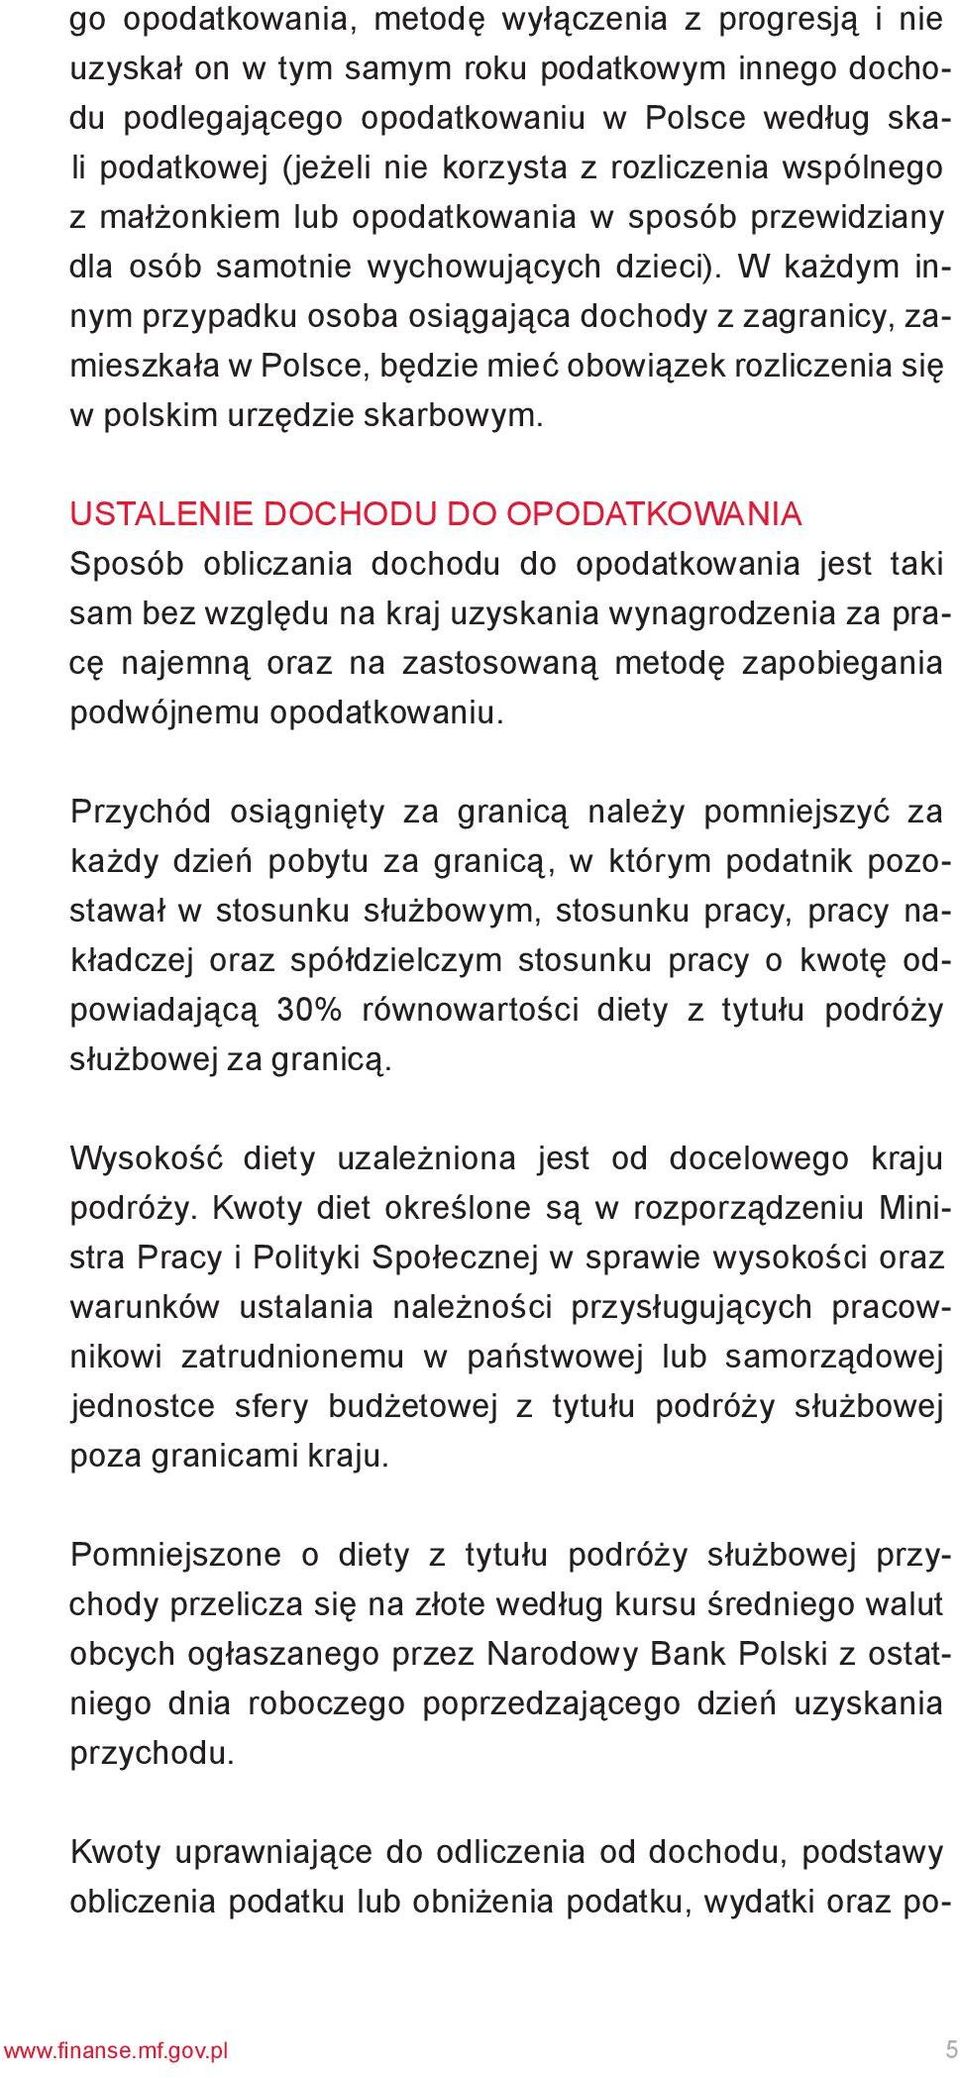 W każdym innym przypadku osoba osiągająca dochody z zagranicy, zamieszkała w Polsce, będzie mieć obowiązek rozliczenia się w polskim urzędzie skarbowym.